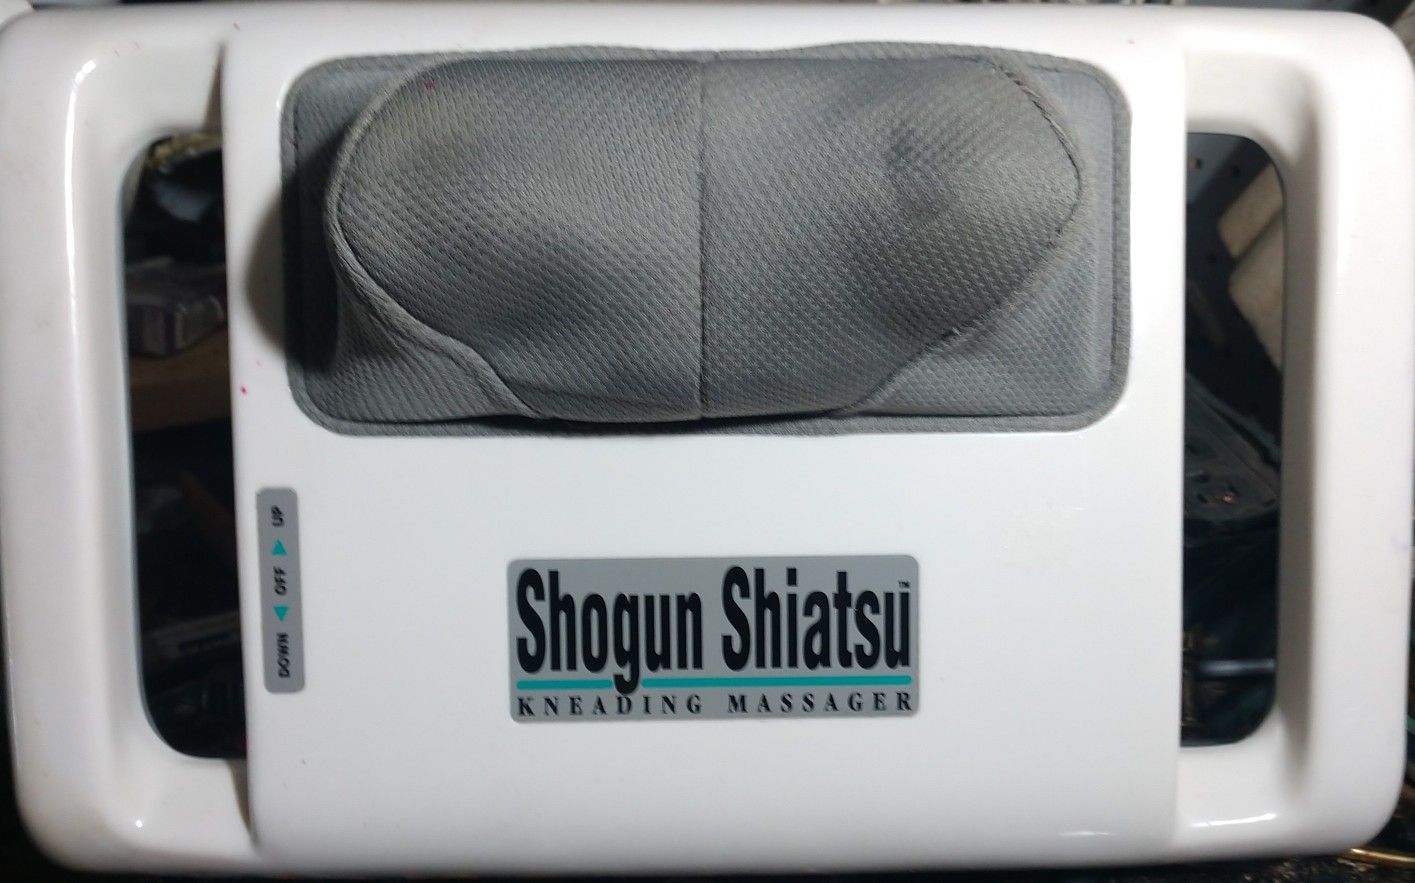 Homedics Shogun Shiatsu Kneading Massager--model Sm-444